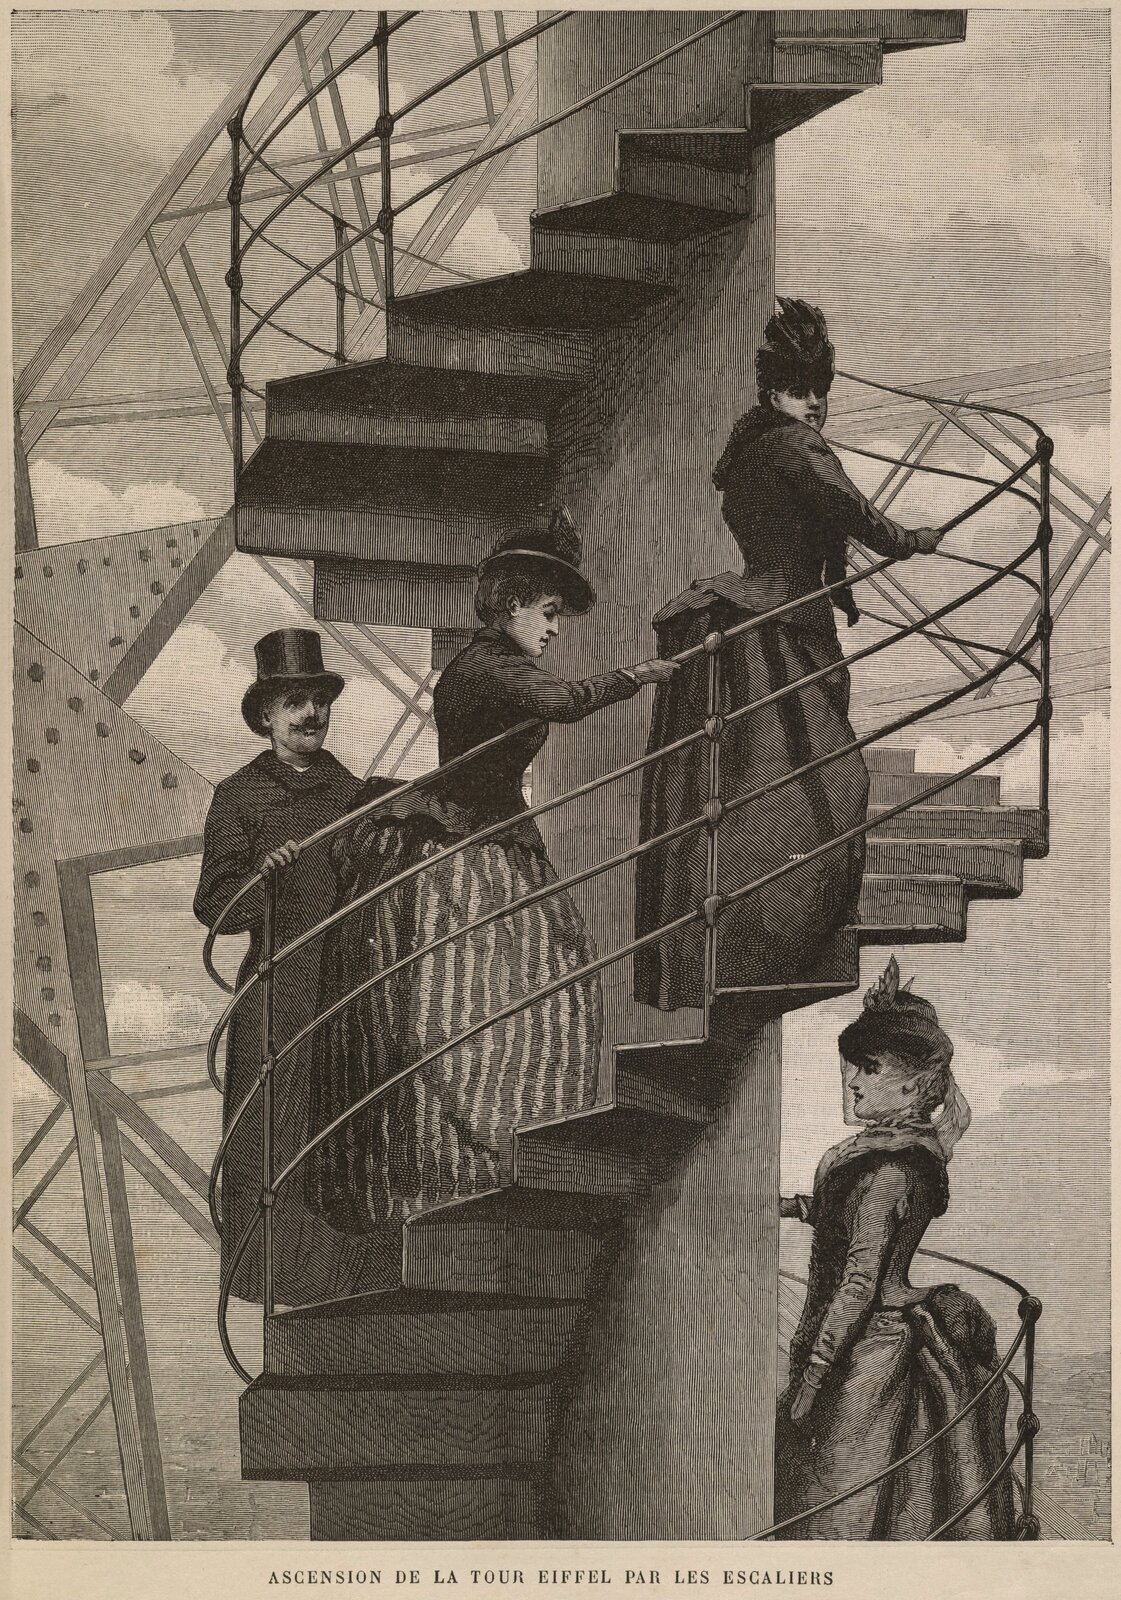 Wspinaczka po schodach na wieżę Eiffla Źródło: Wspinaczka po schodach na wieżę Eiffla, 1889, grawerunek, Brown University Library, domena publiczna.